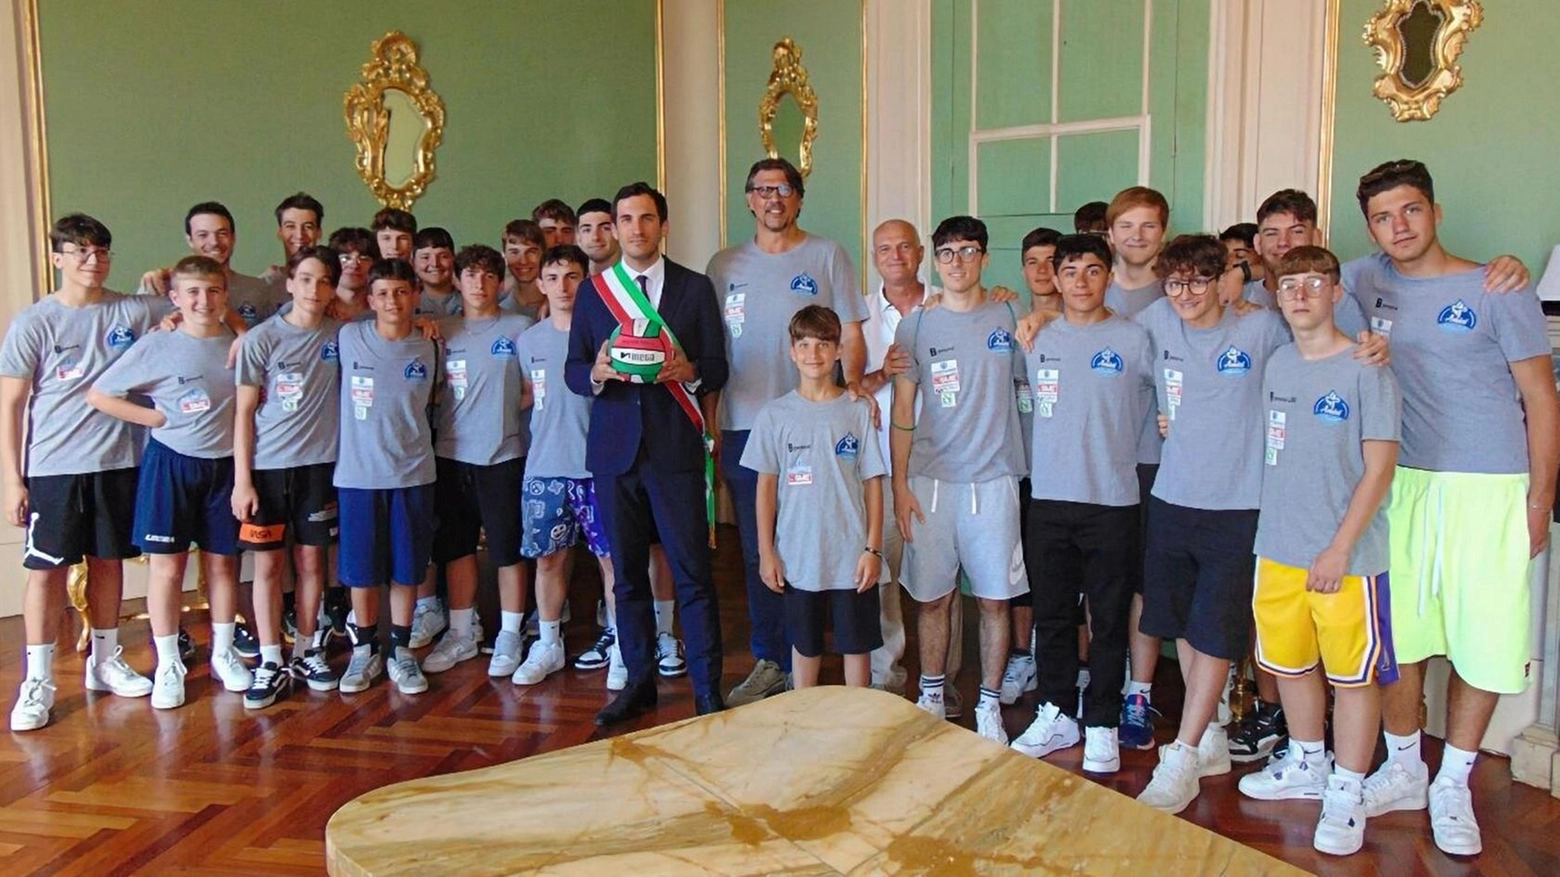 Soddisfazione per le squadre dell’Amici nuoto Romagna. Le congratulazioni del sindaco Lattuca.